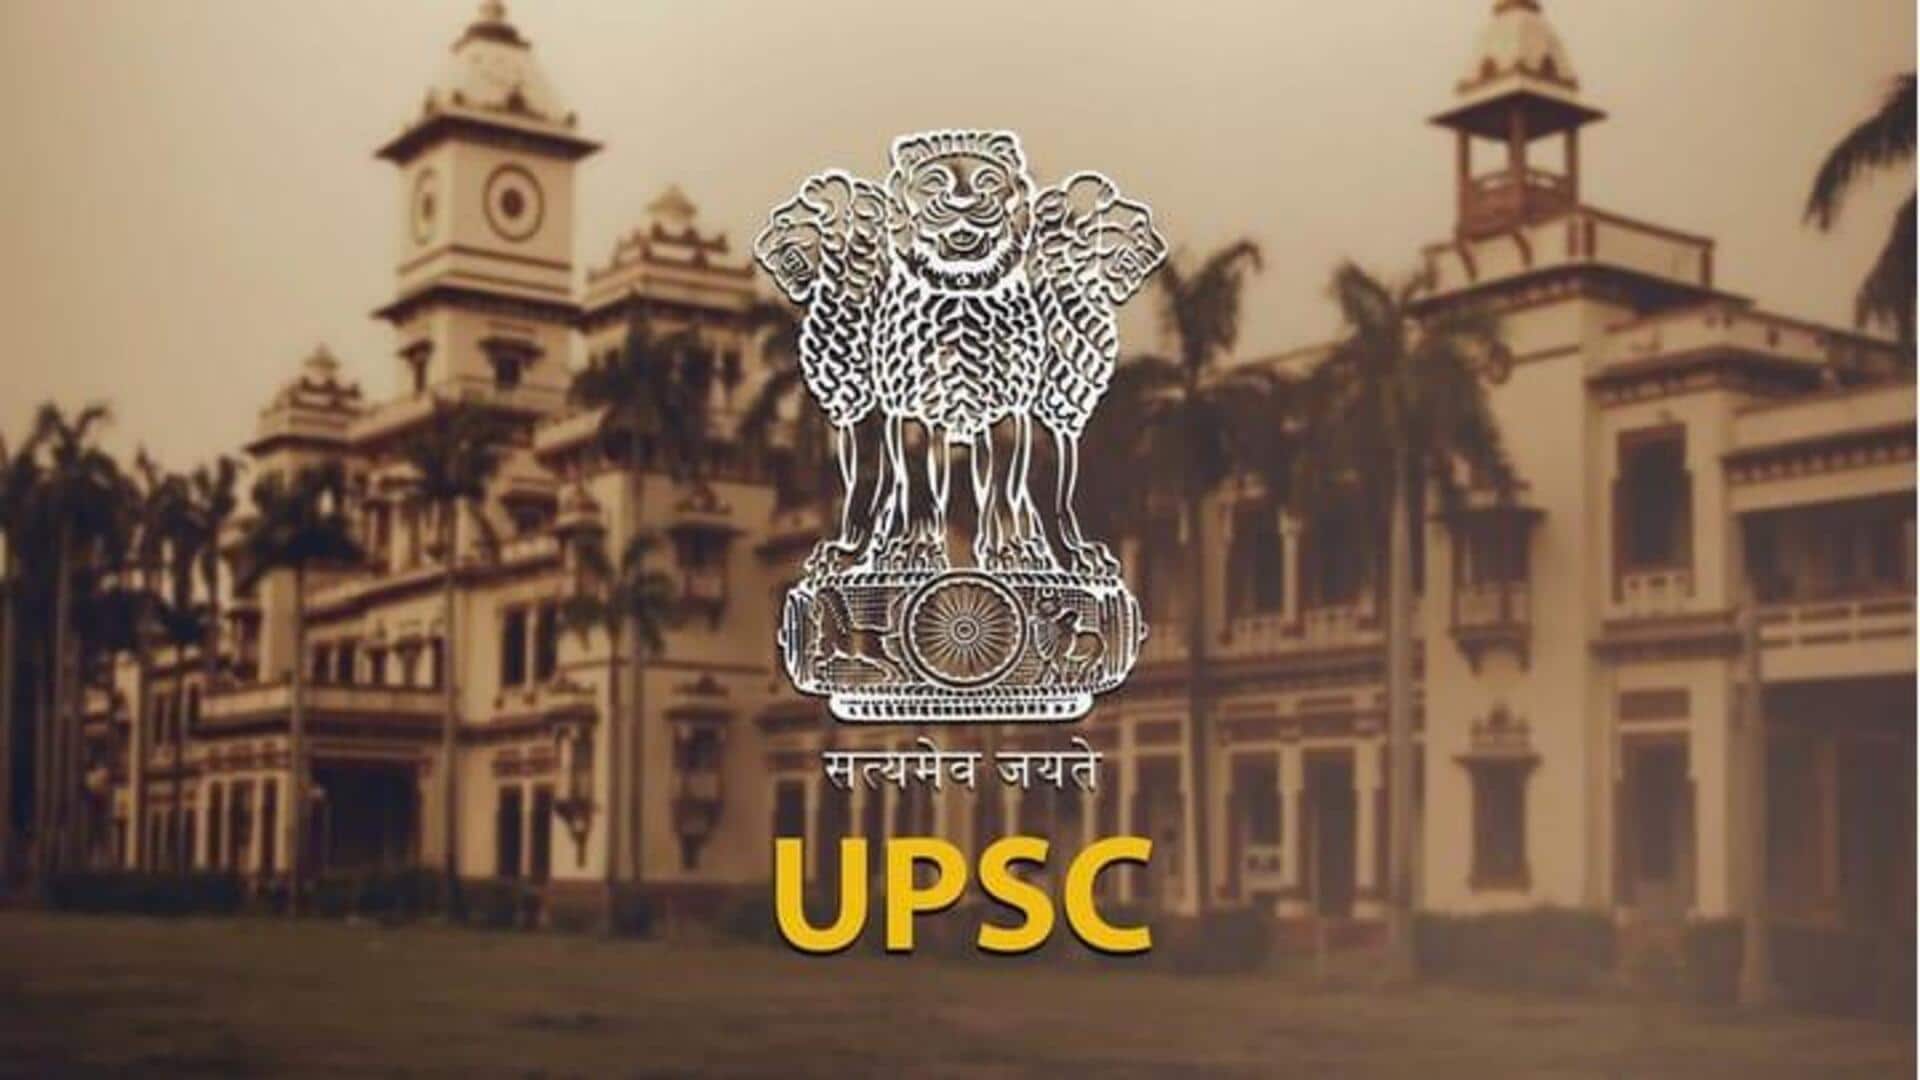 UPSC: IAS और IES अधिकारी में क्या है अंतर? जानें काम और जिम्मेदारी